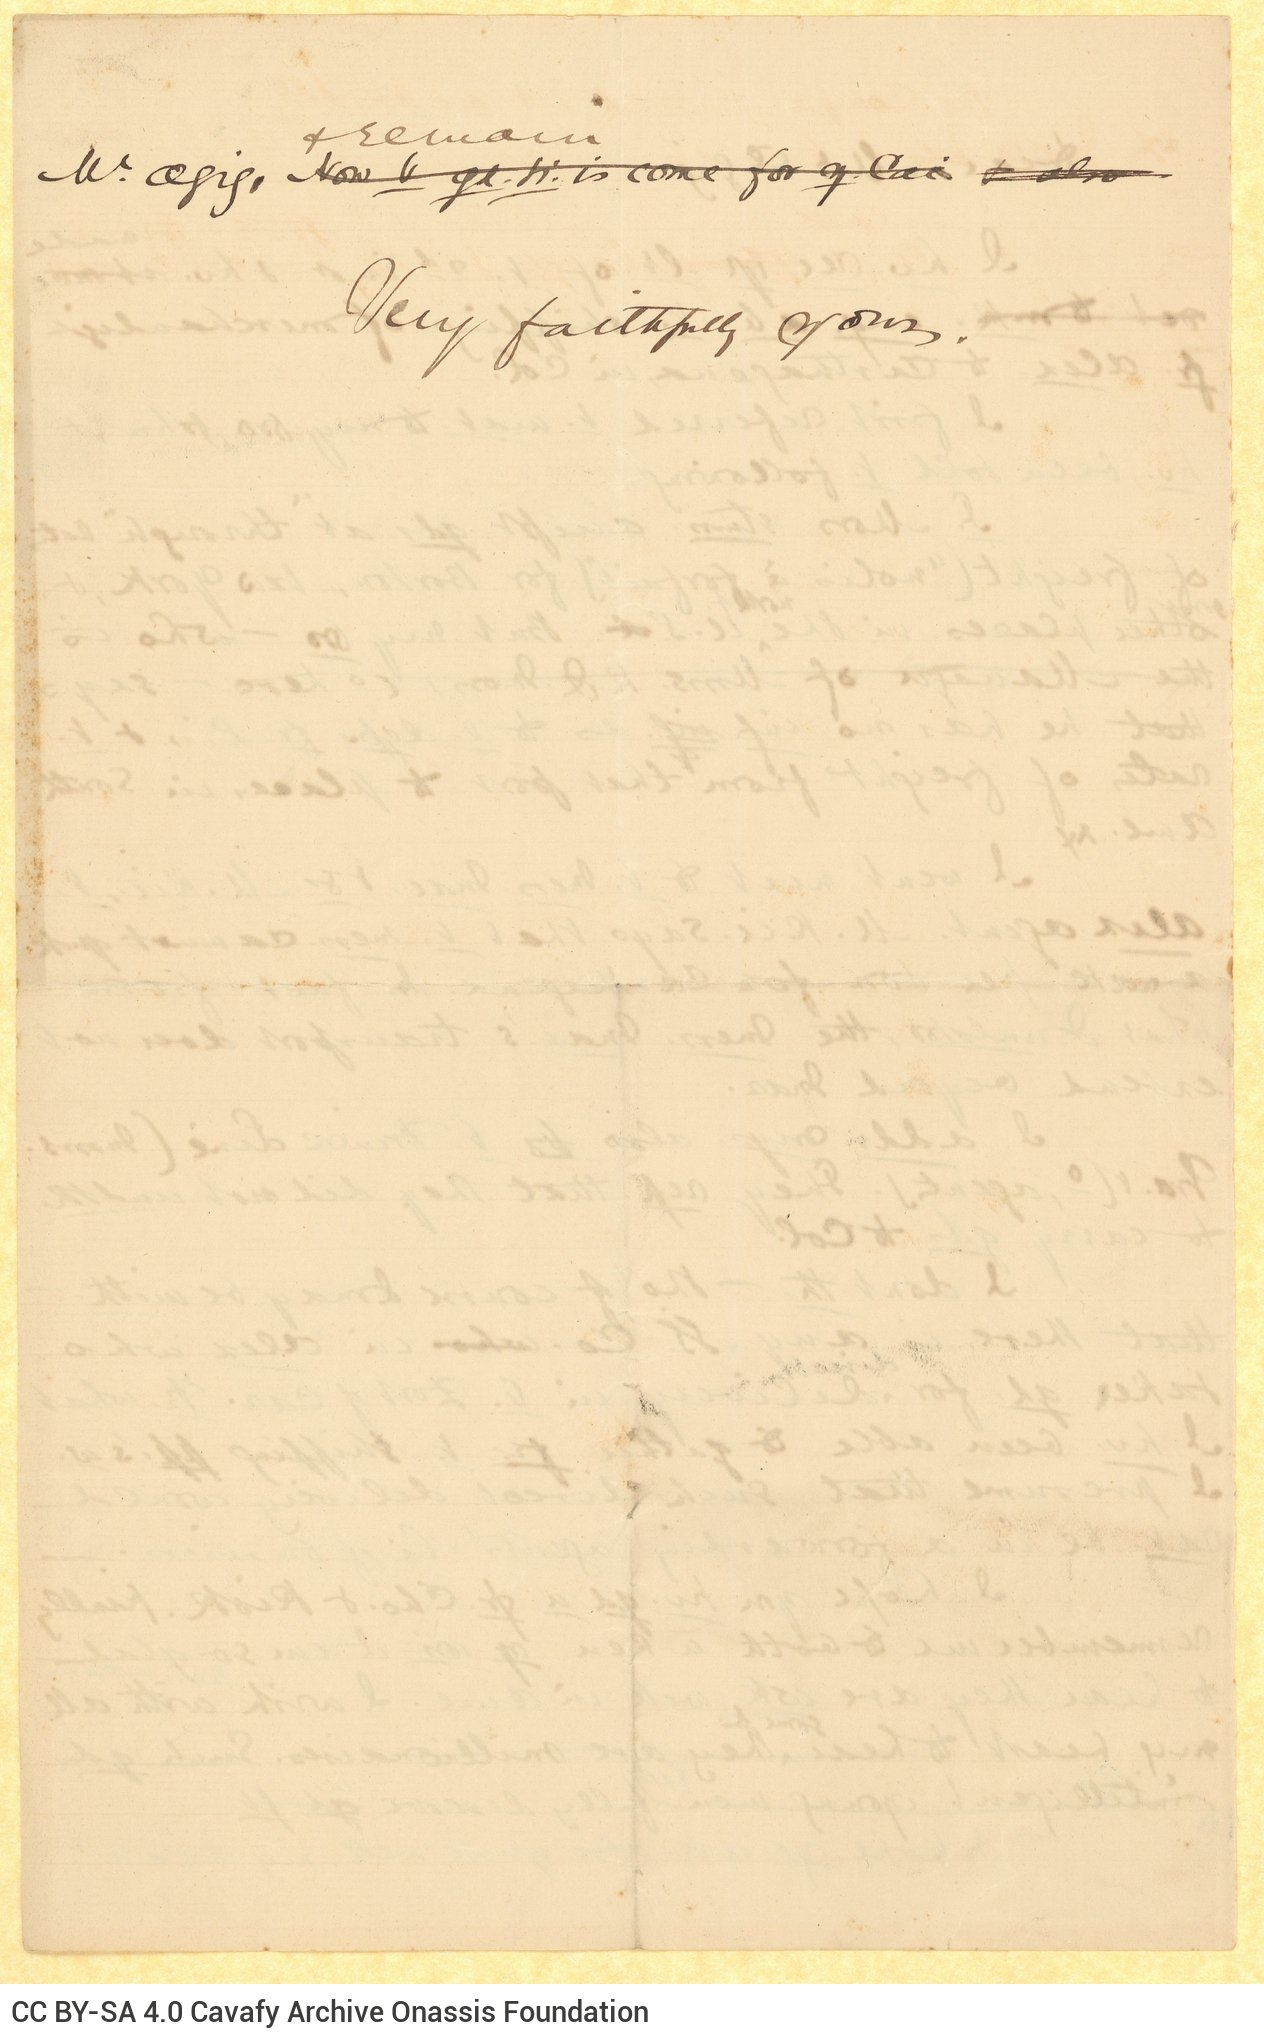 Χειρόγραφο σχέδιο επιστολής του Καβάφη προς παραλήπτη με το όνομα Azi